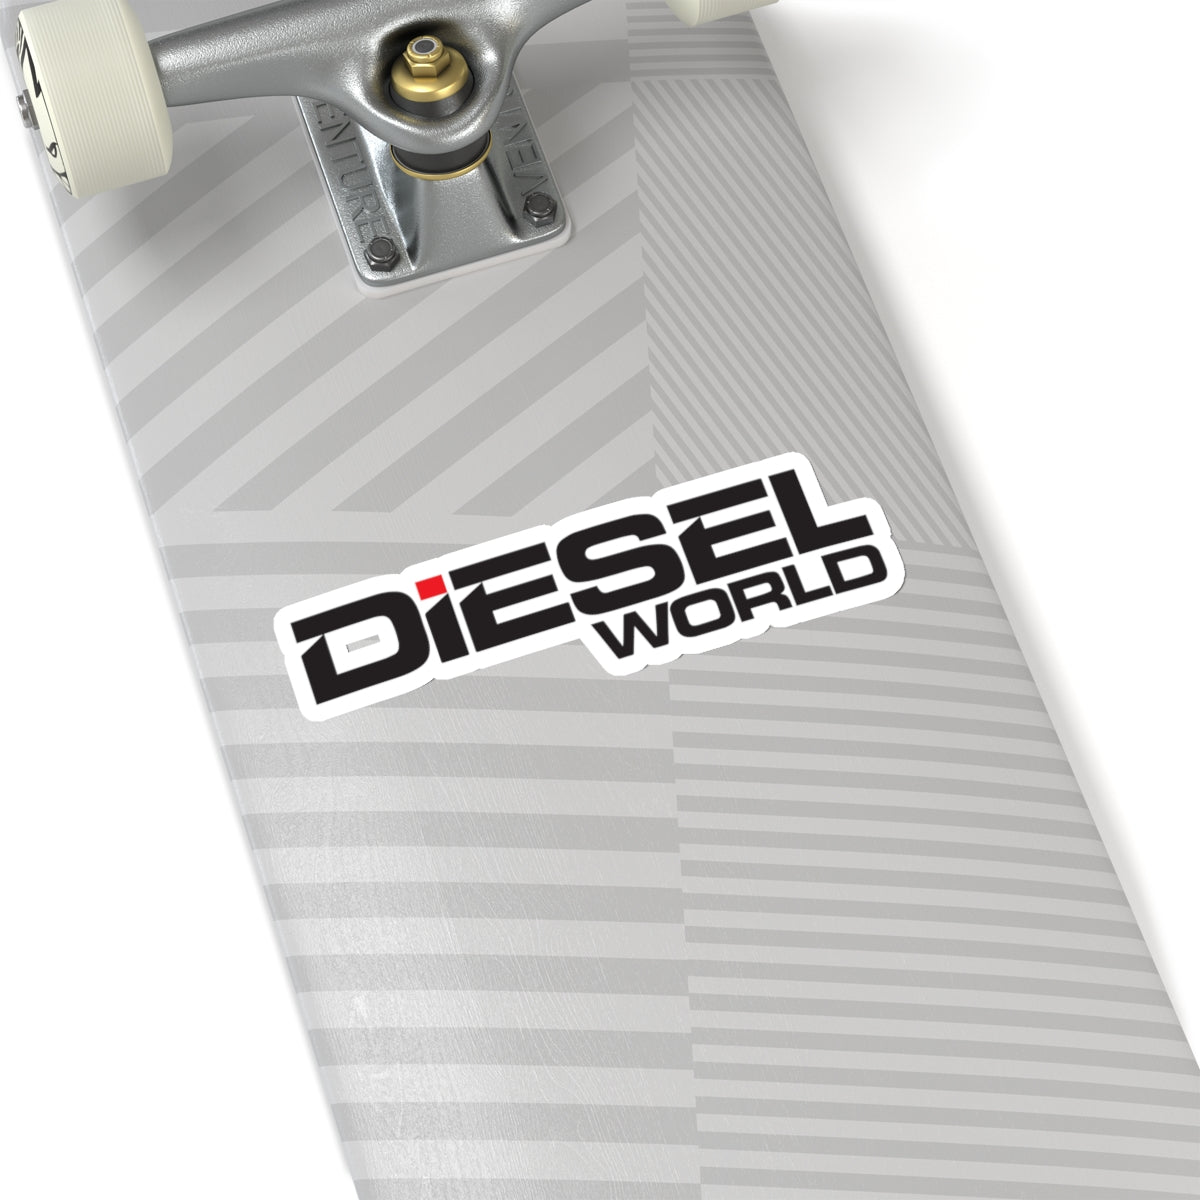 Diesel World - Kiss-Cut Stickers